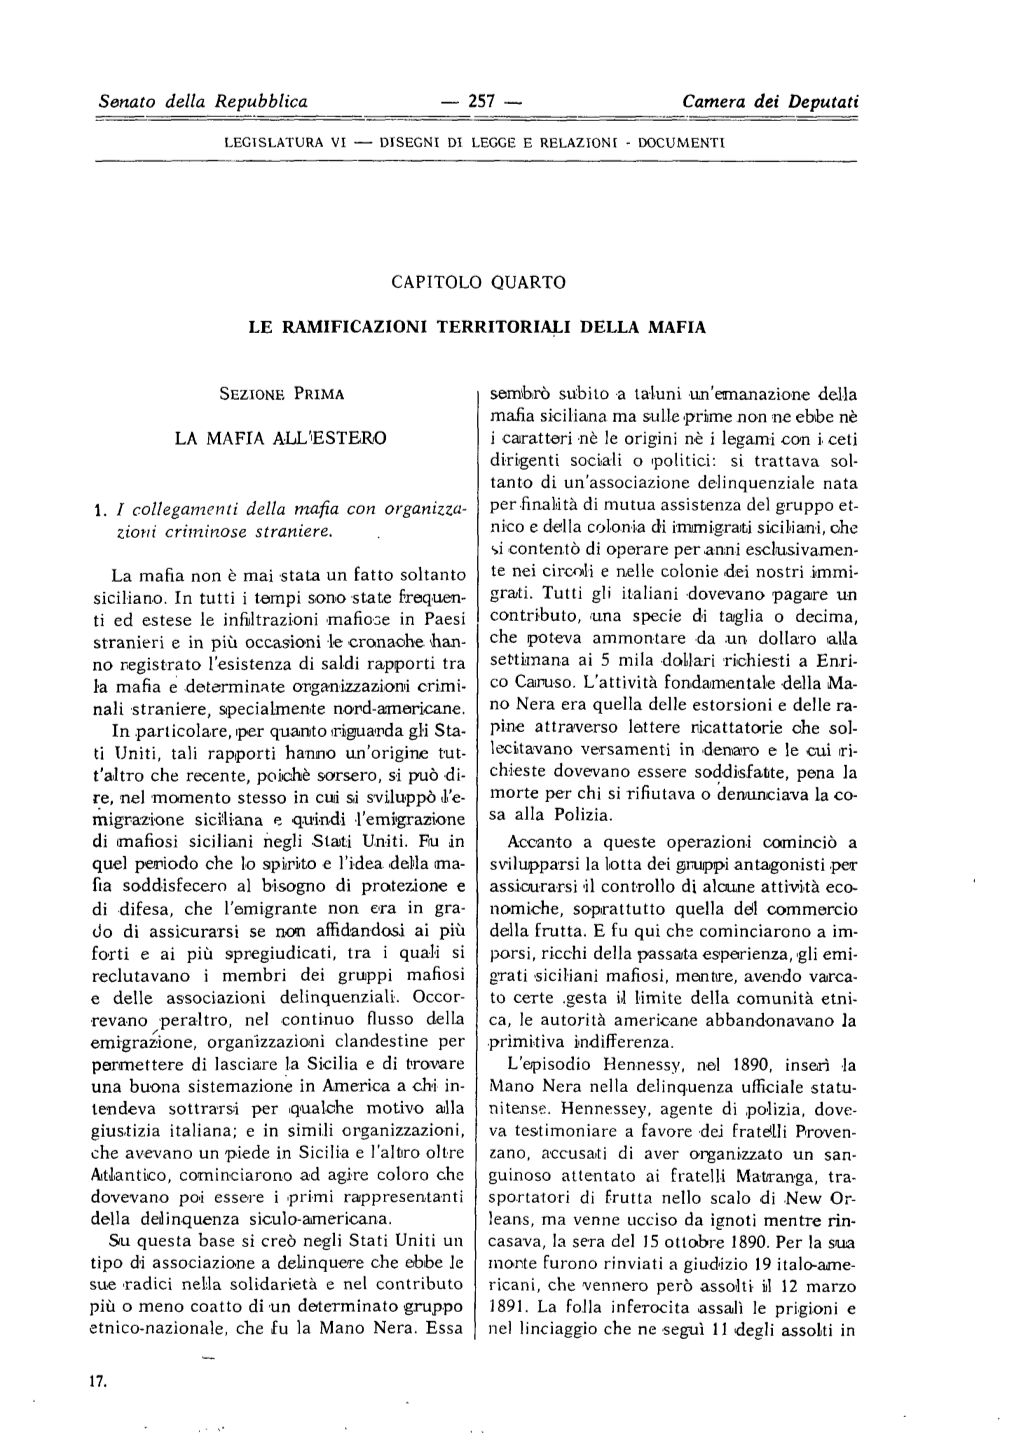 Capitolo IV. Le Ramificazioni Territoriali Della Mafia (Formato PDF 3051